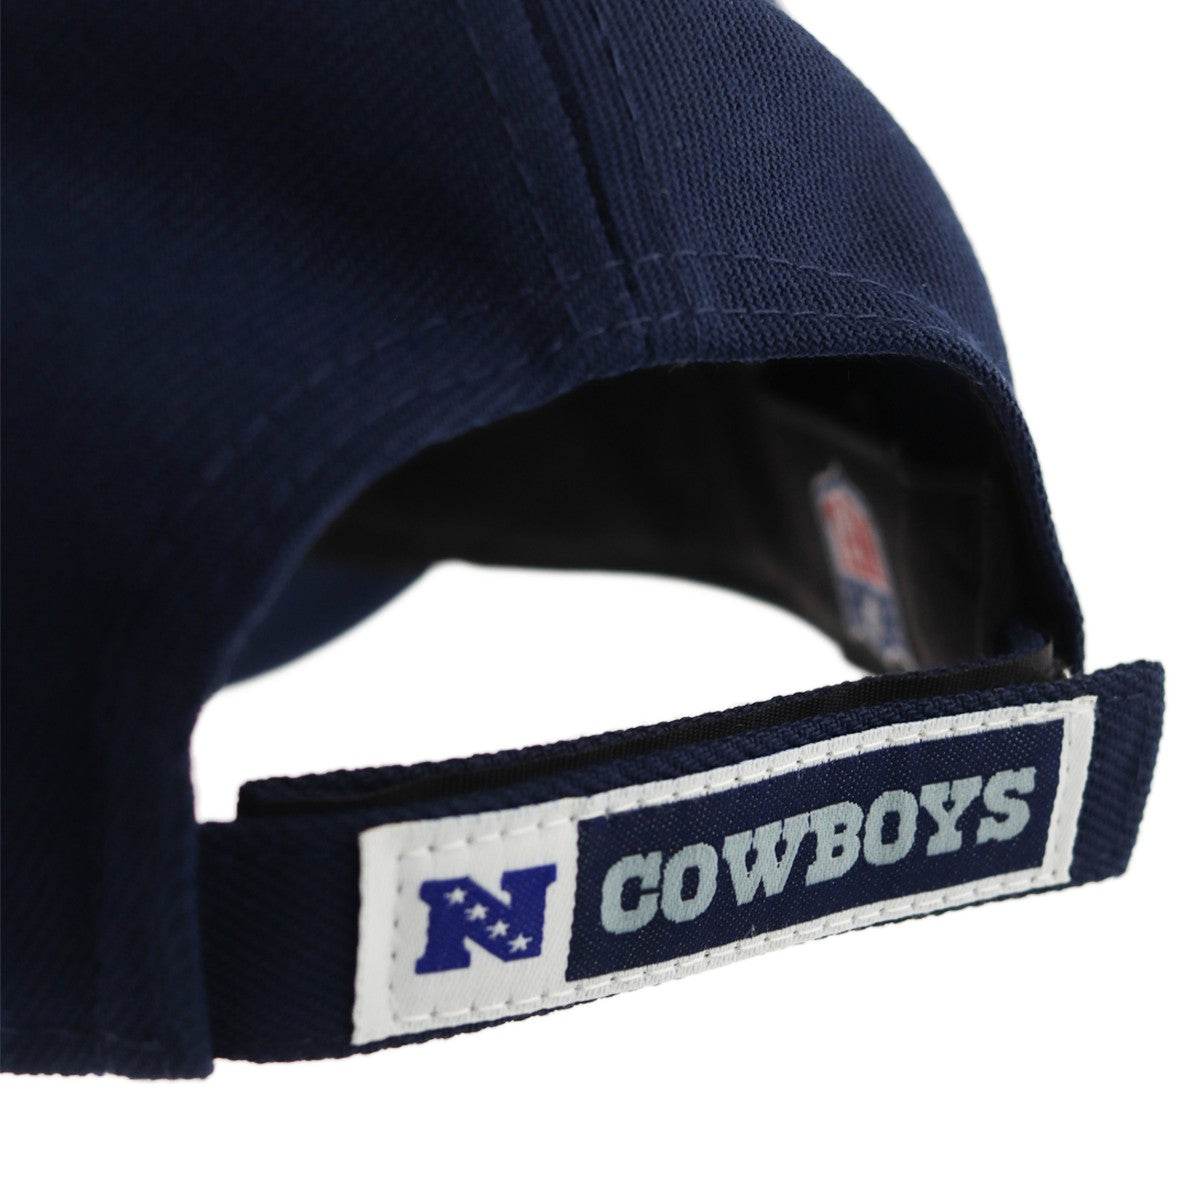 New Era Dallas Cowboys NFL The League Cap 10517887-